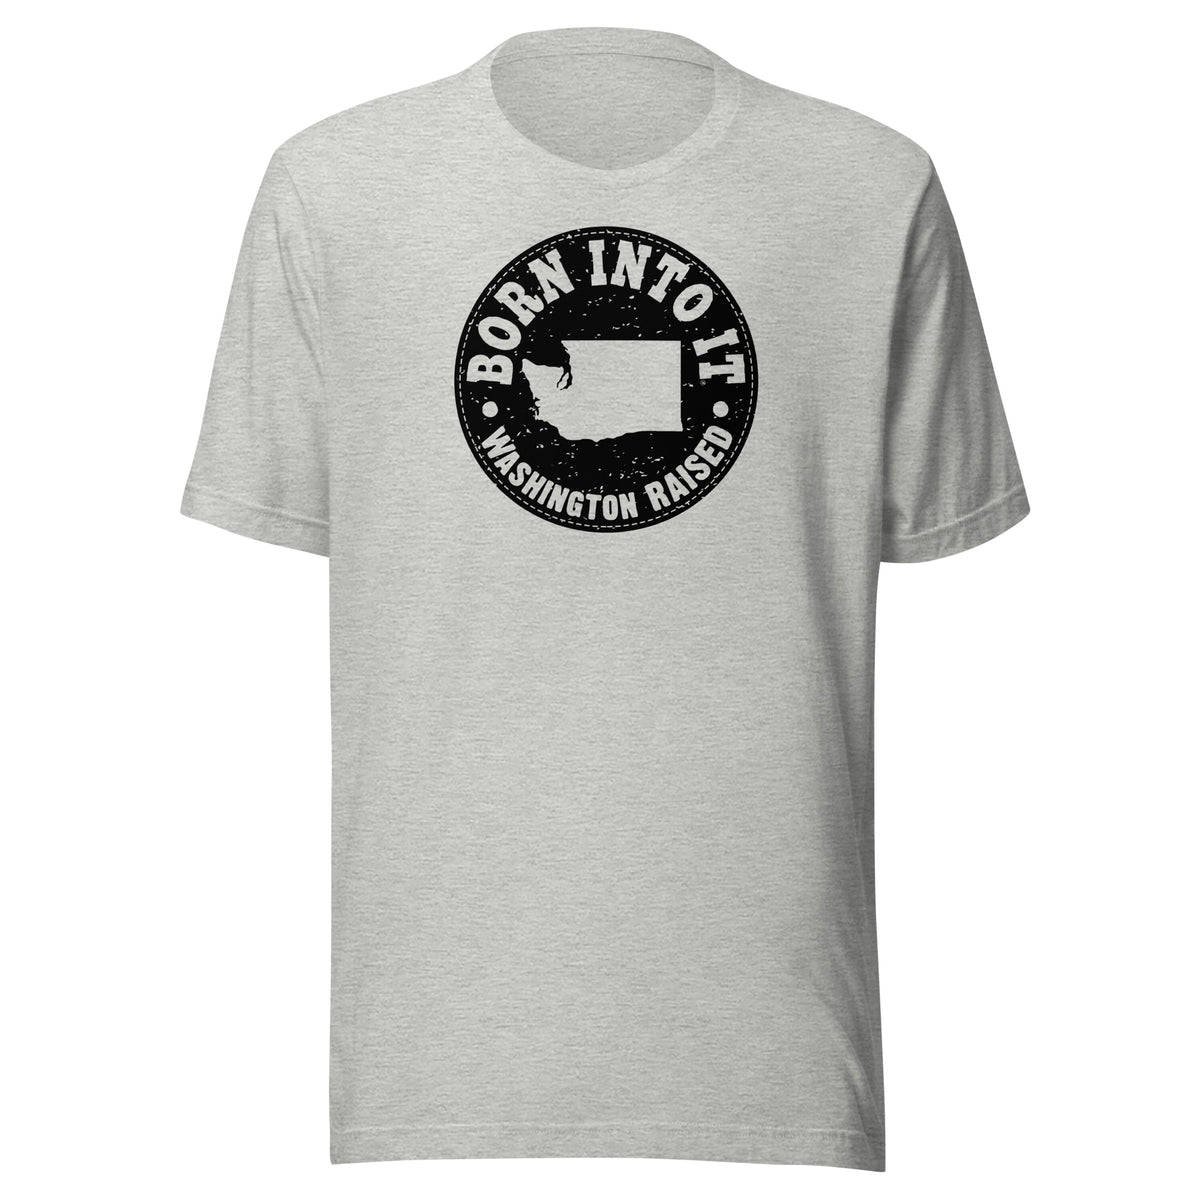 Washington Raised Unisex T-Shirt